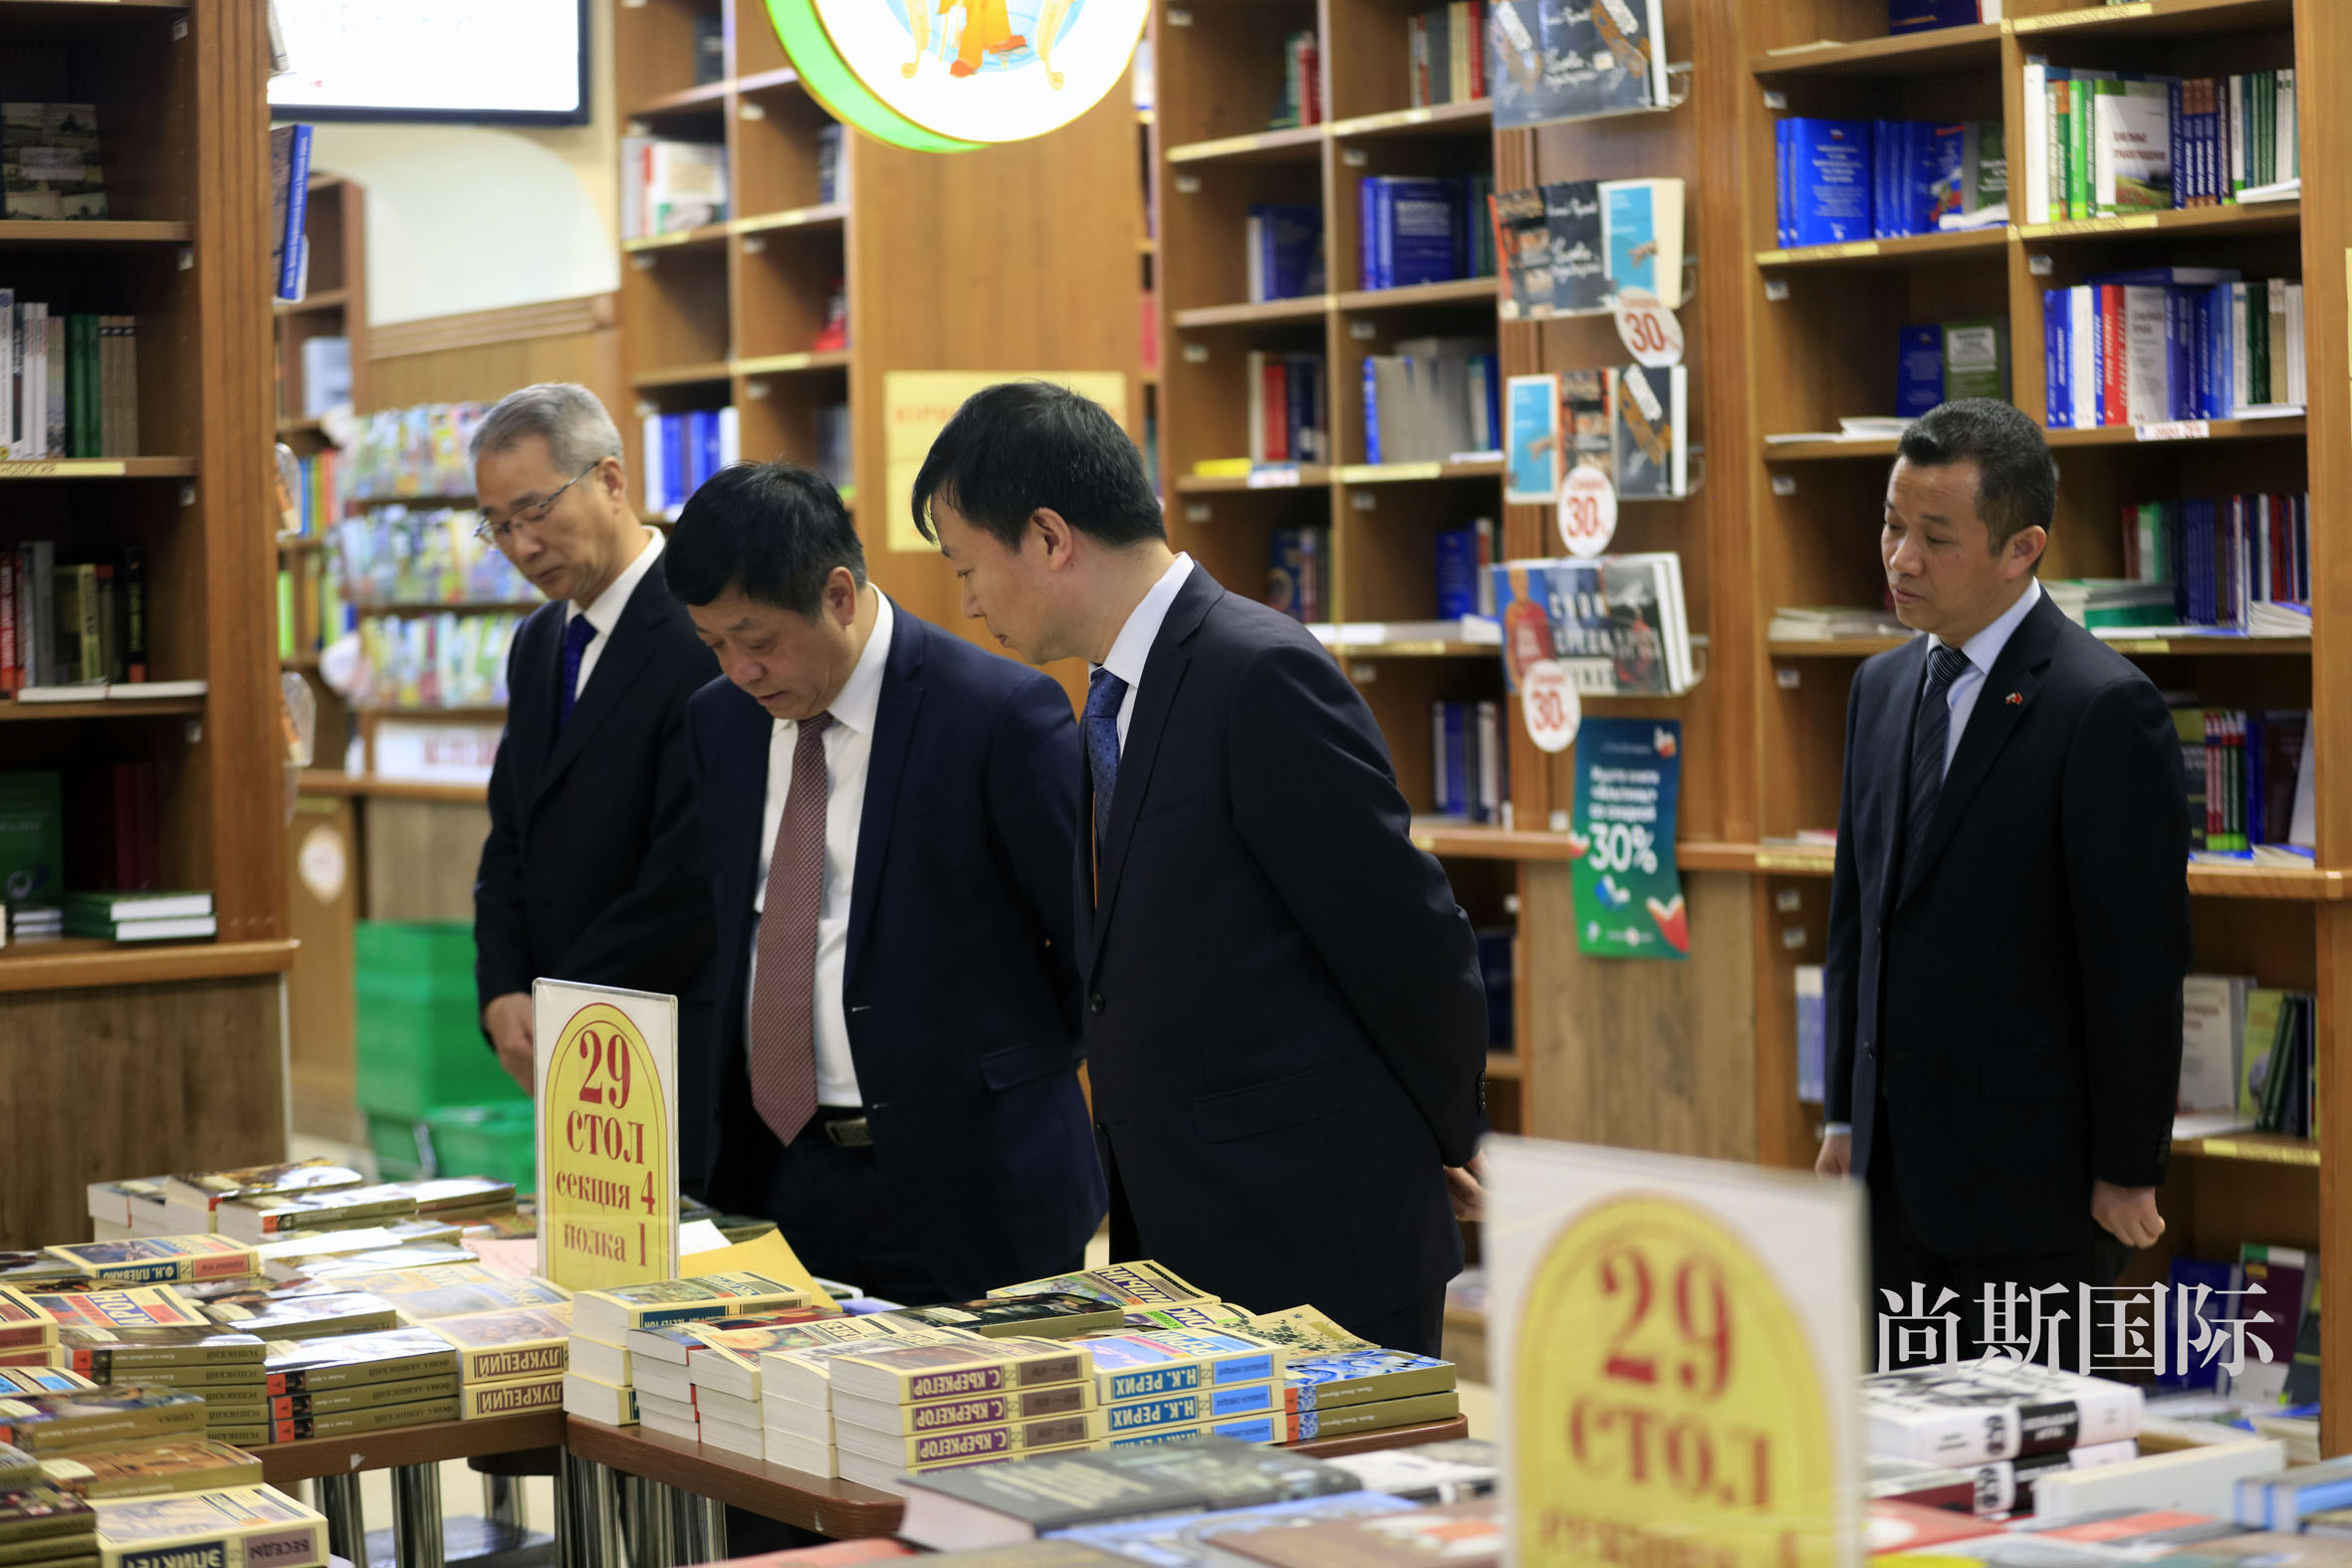 莫斯科举办联合国中文日主题活动 迎接世界读书日